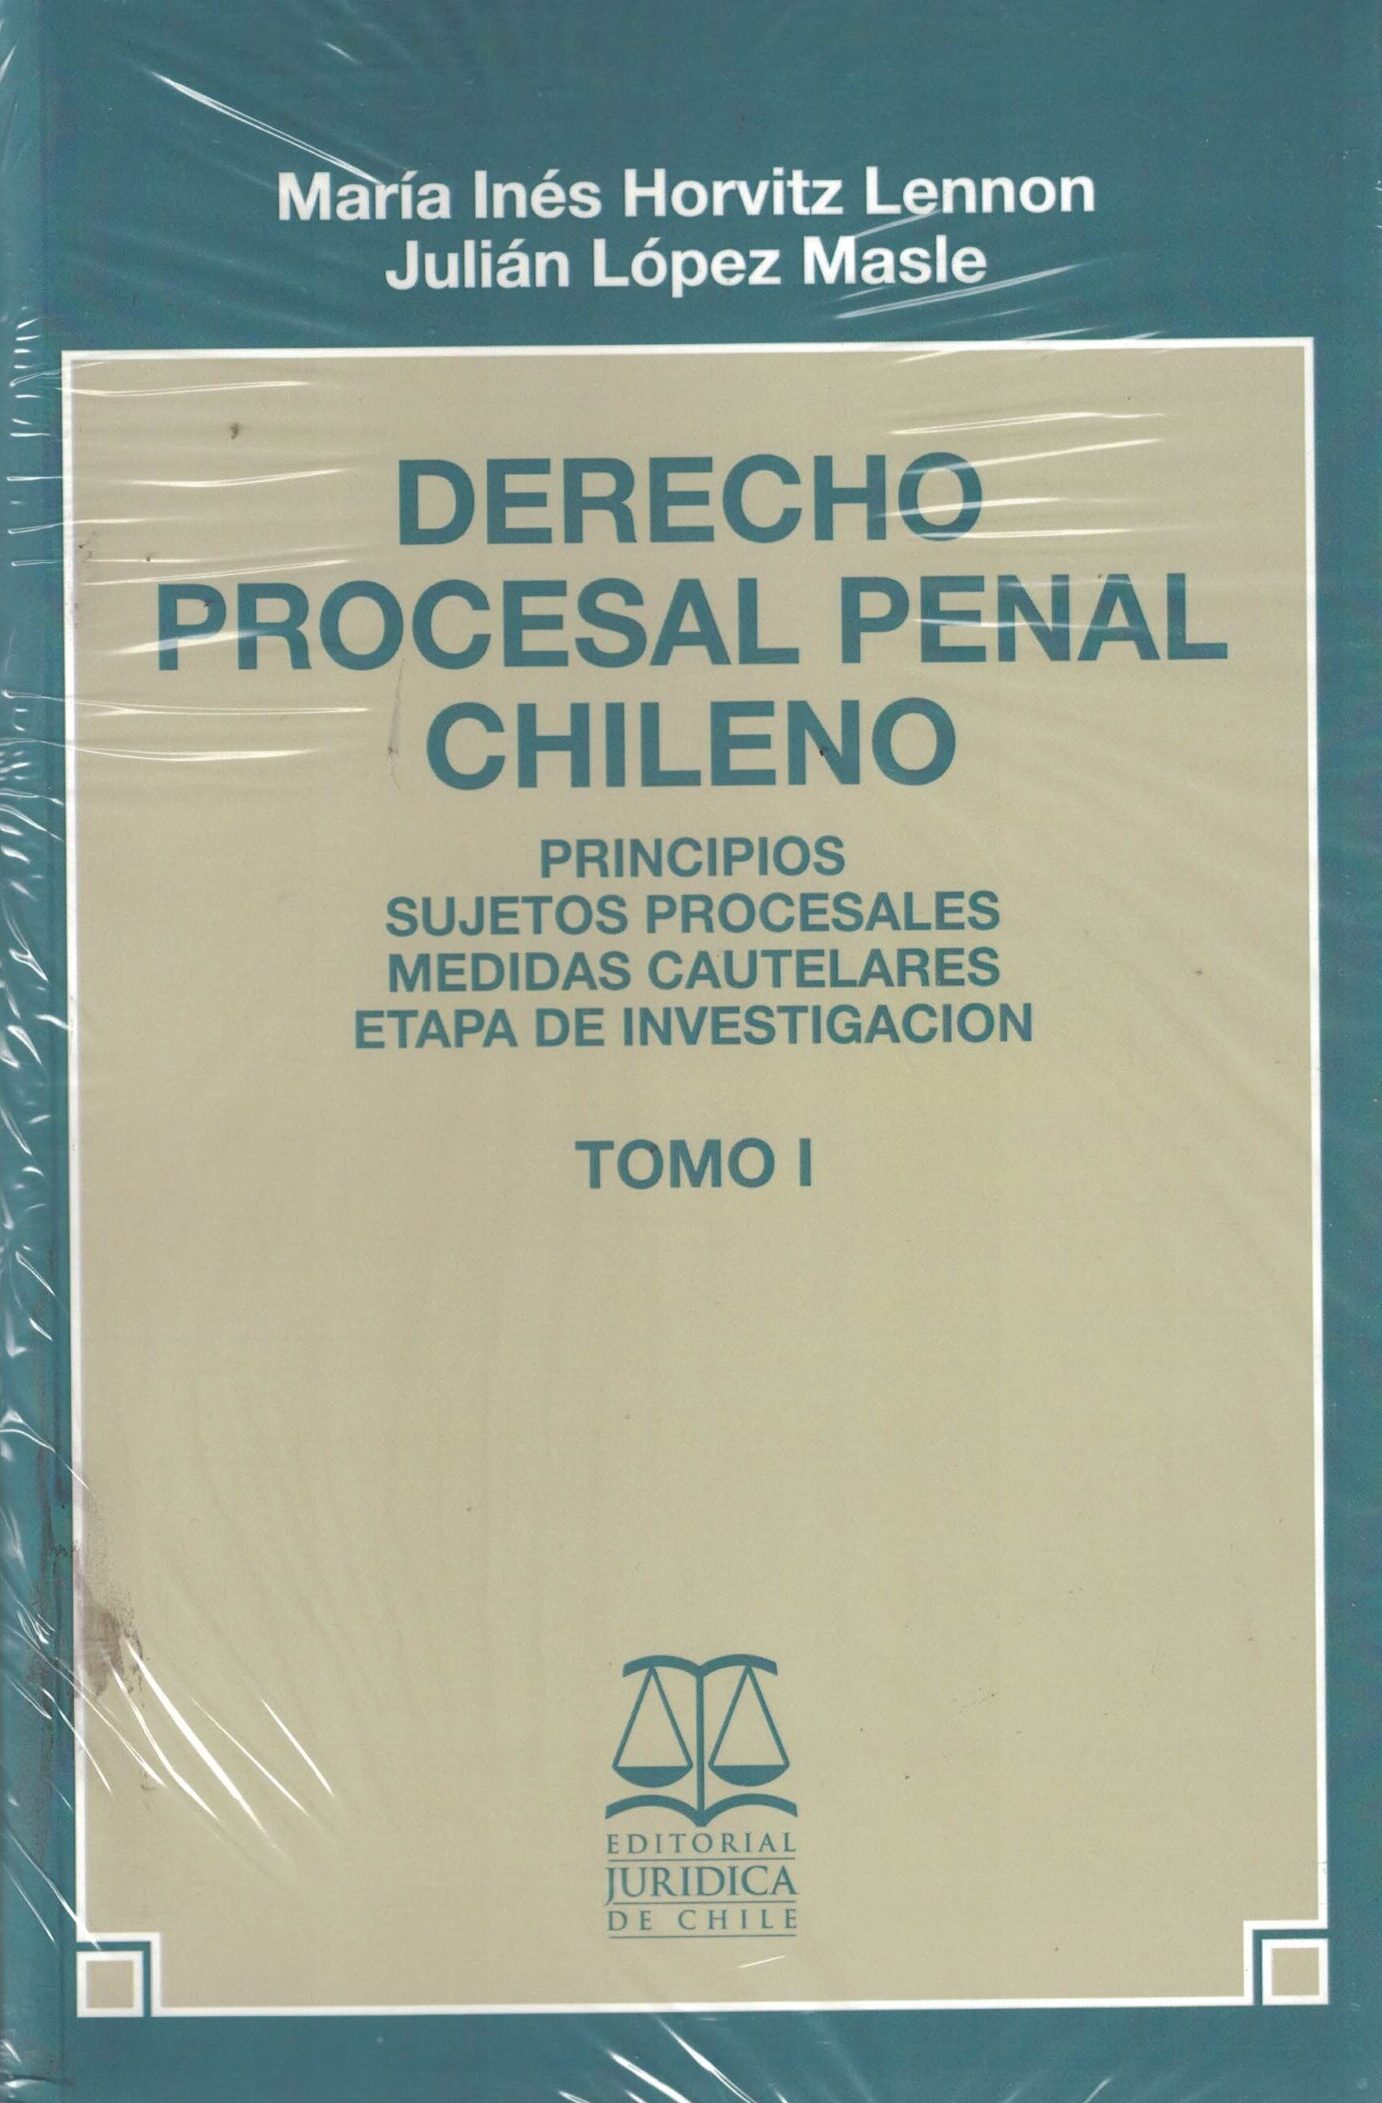 Derecho Procesal Penal Chileno - Principios, Sujetos Procesales, Medidas Cautelares, Etapa de investigación Tomo I